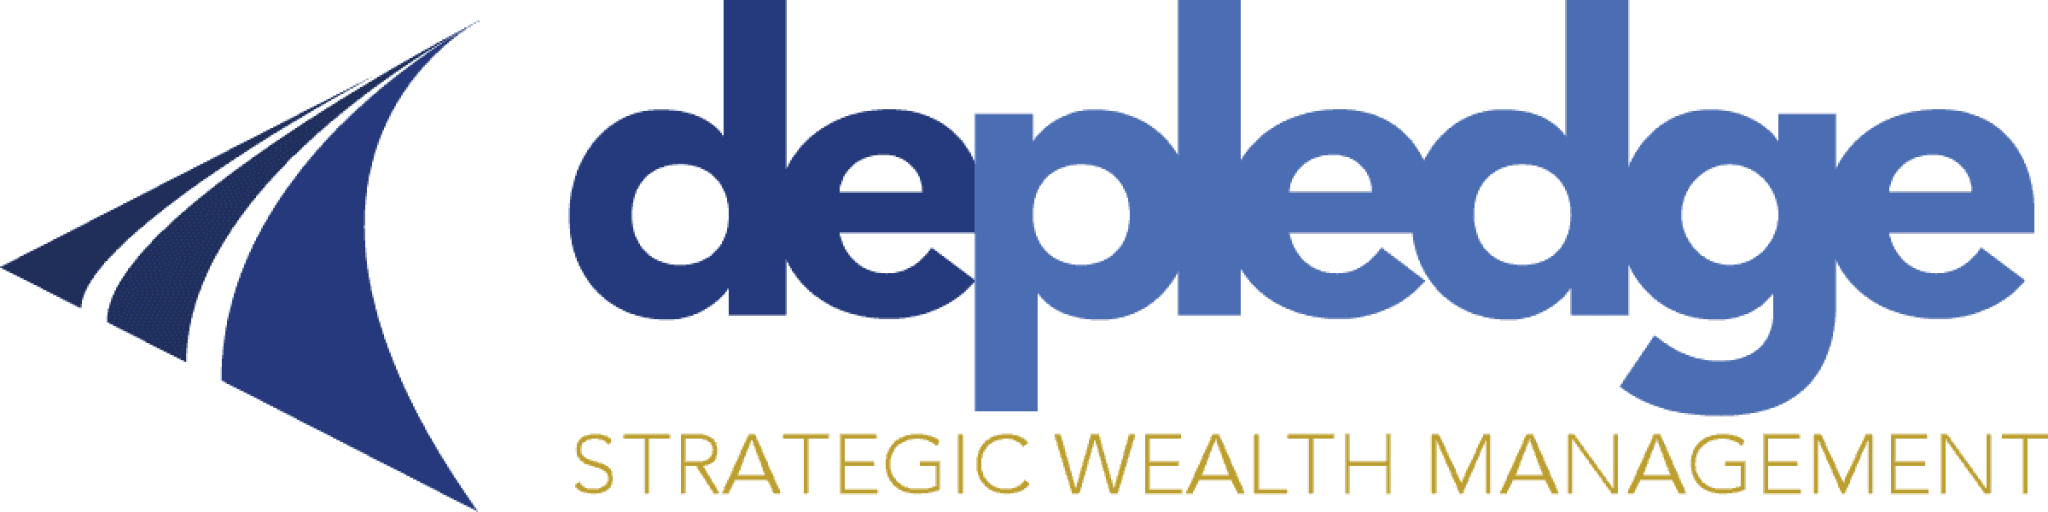 depledge-strategic-wealth-management-logo.png